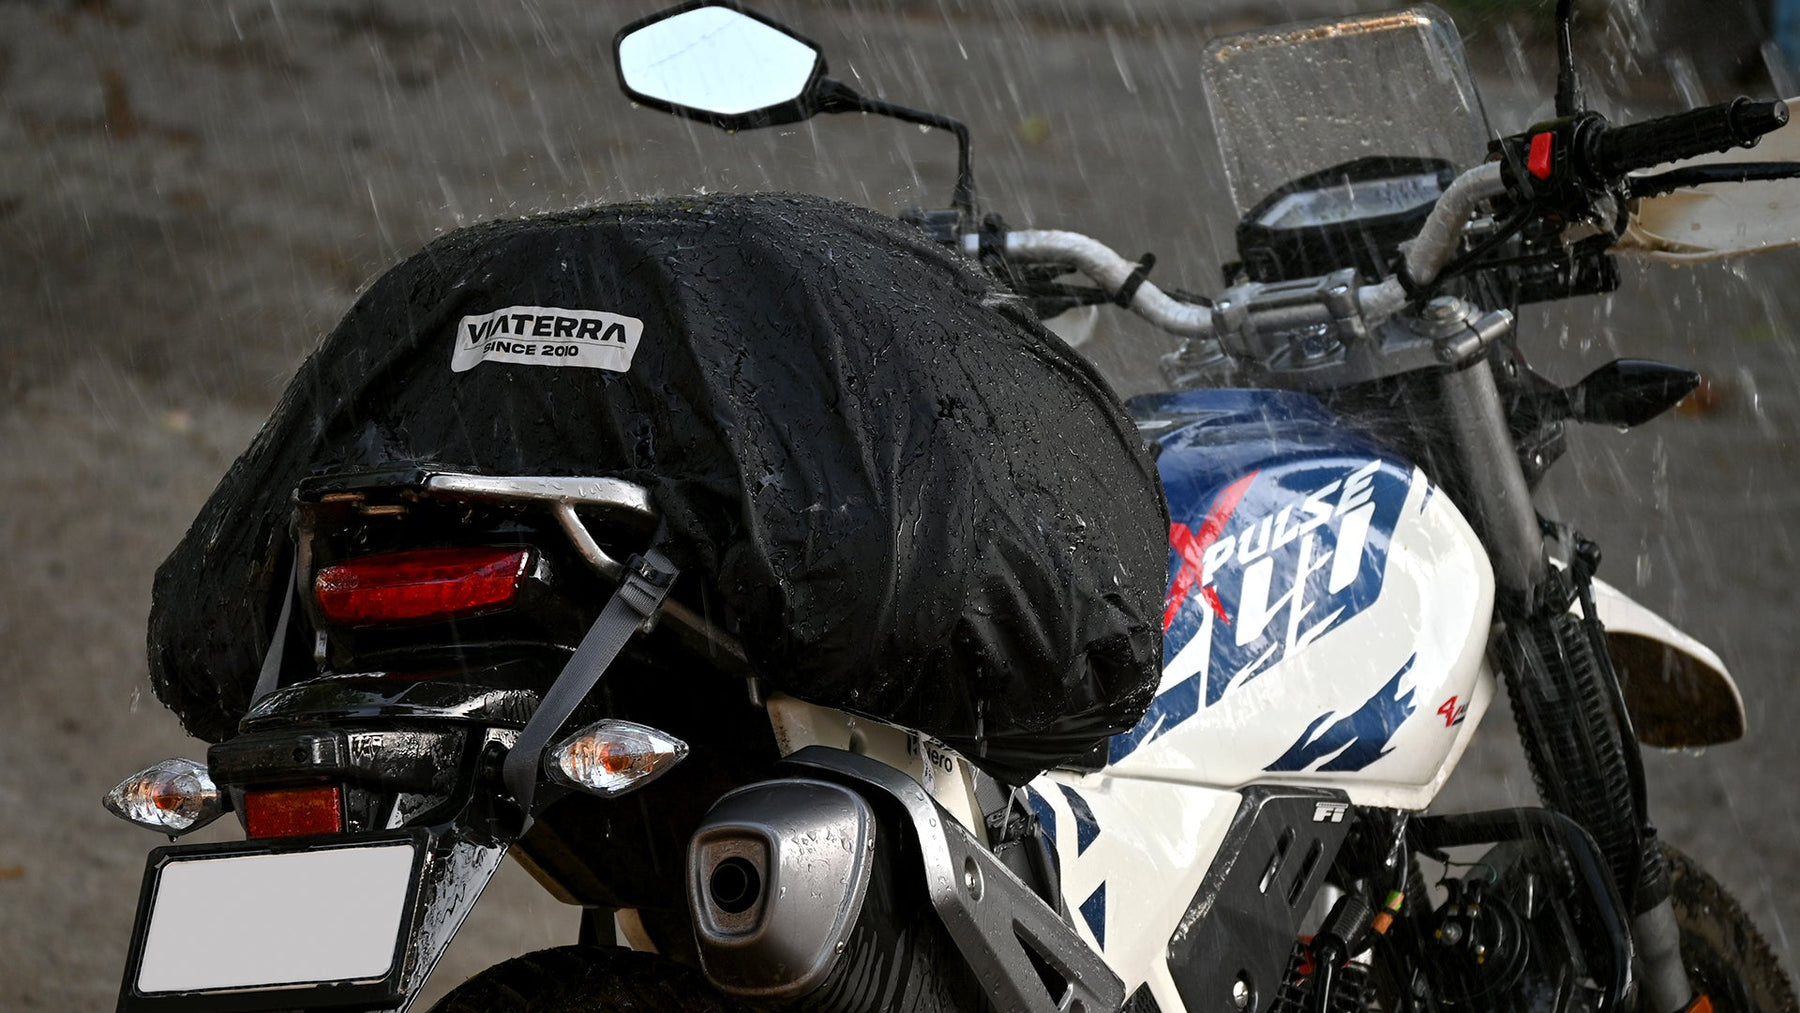 100% Waterproof motorcycle bags